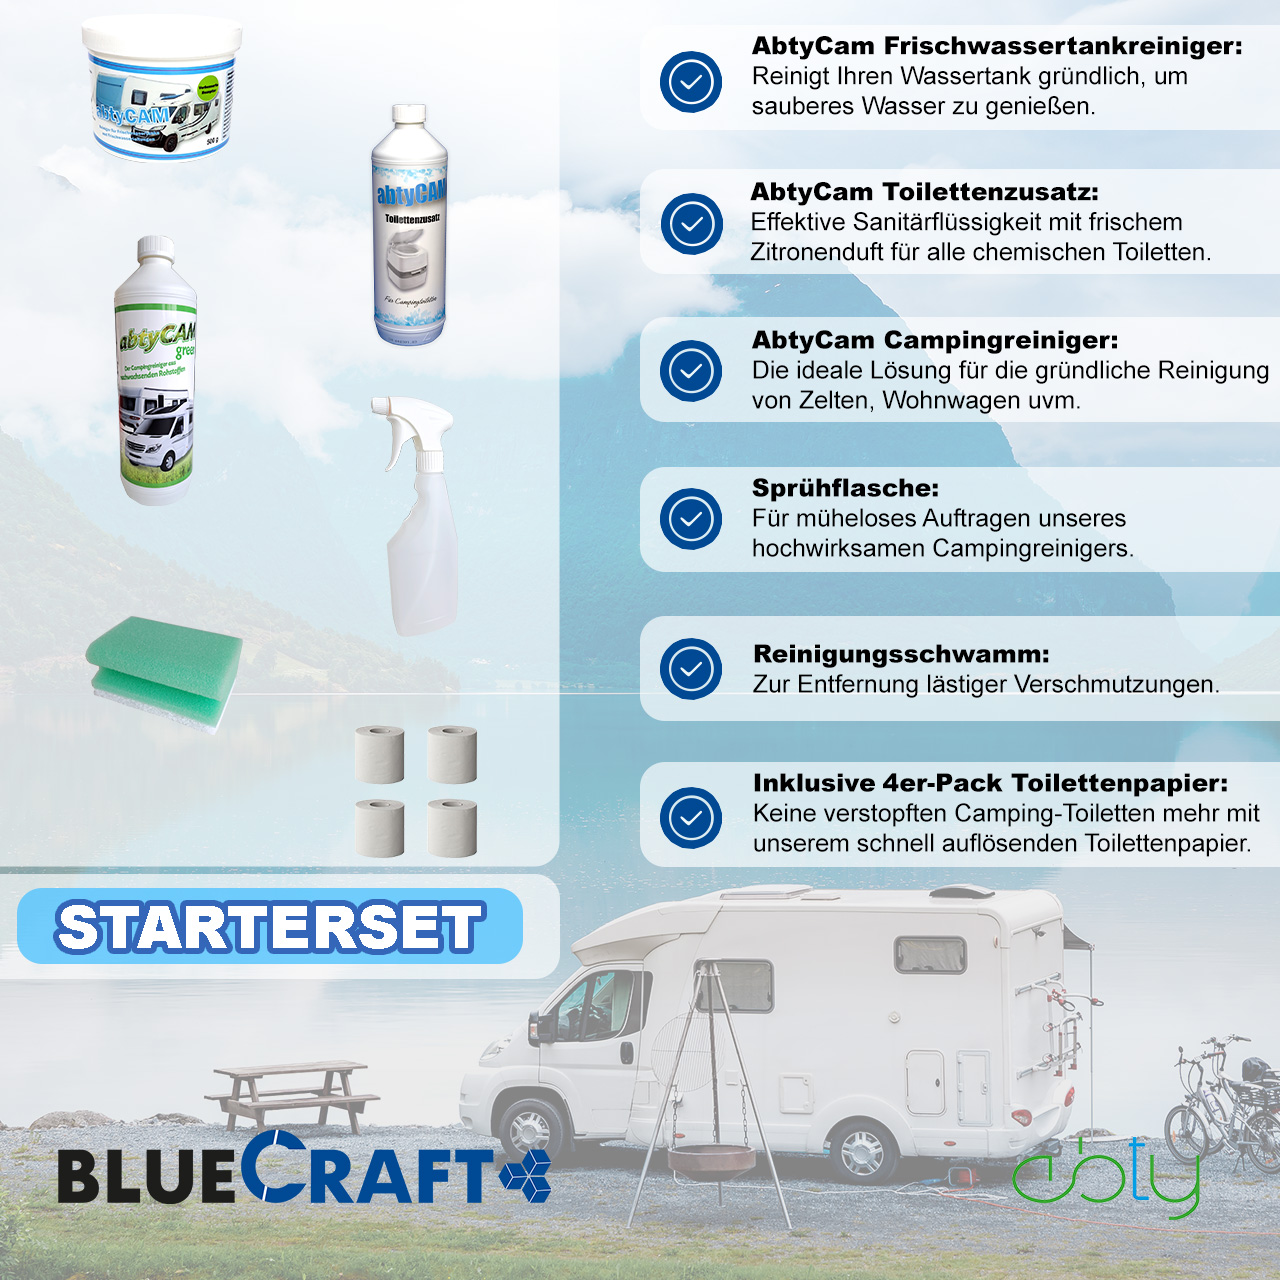 704-START_Aufstellung_AbtyCam-Frischwassertankreiniger_AbtyCam-Toilettenzusatz_AbtyCam-Campingreiniger_Spruehflasche_Reinigungsschwamm_4er-Pack-Toilettenpapier (2)